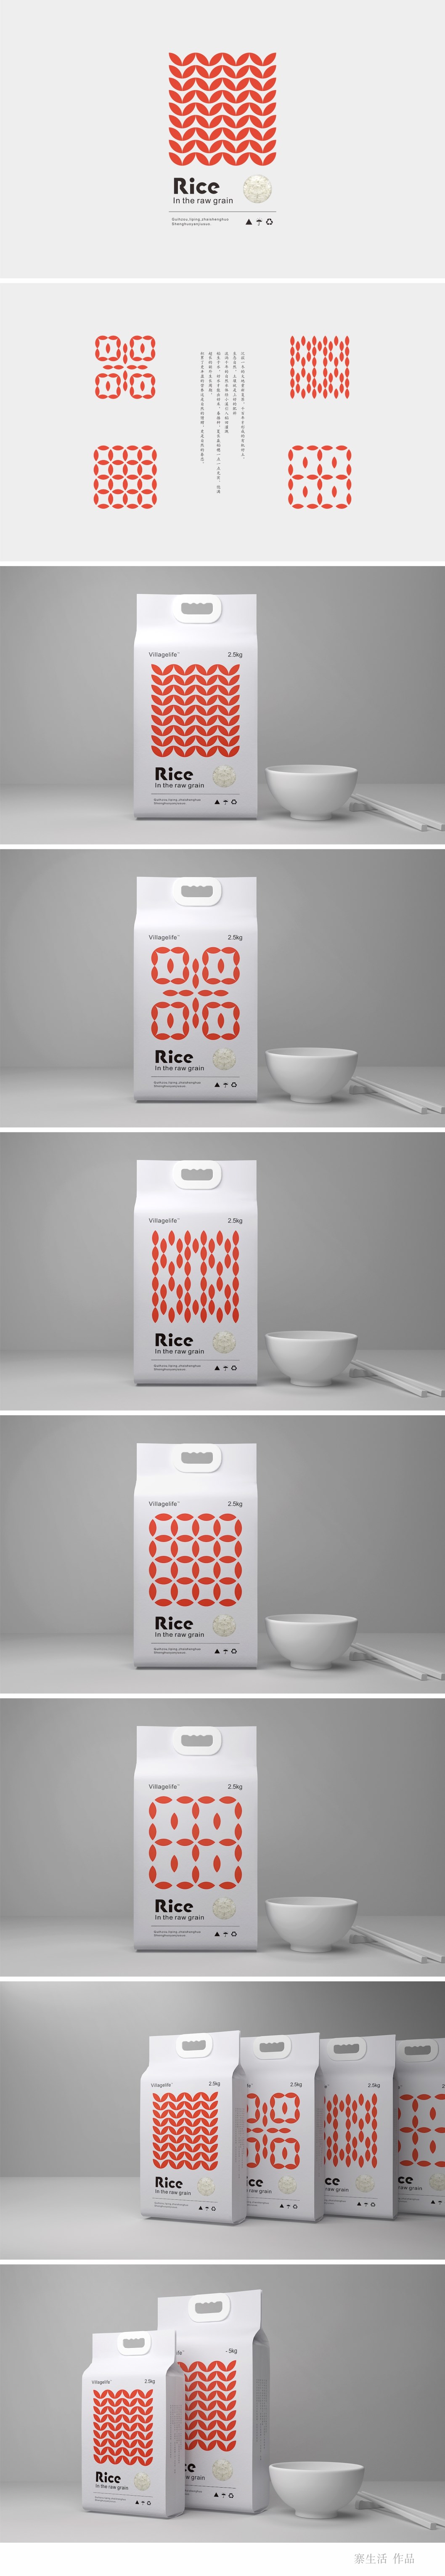 Rice-大米包装设计